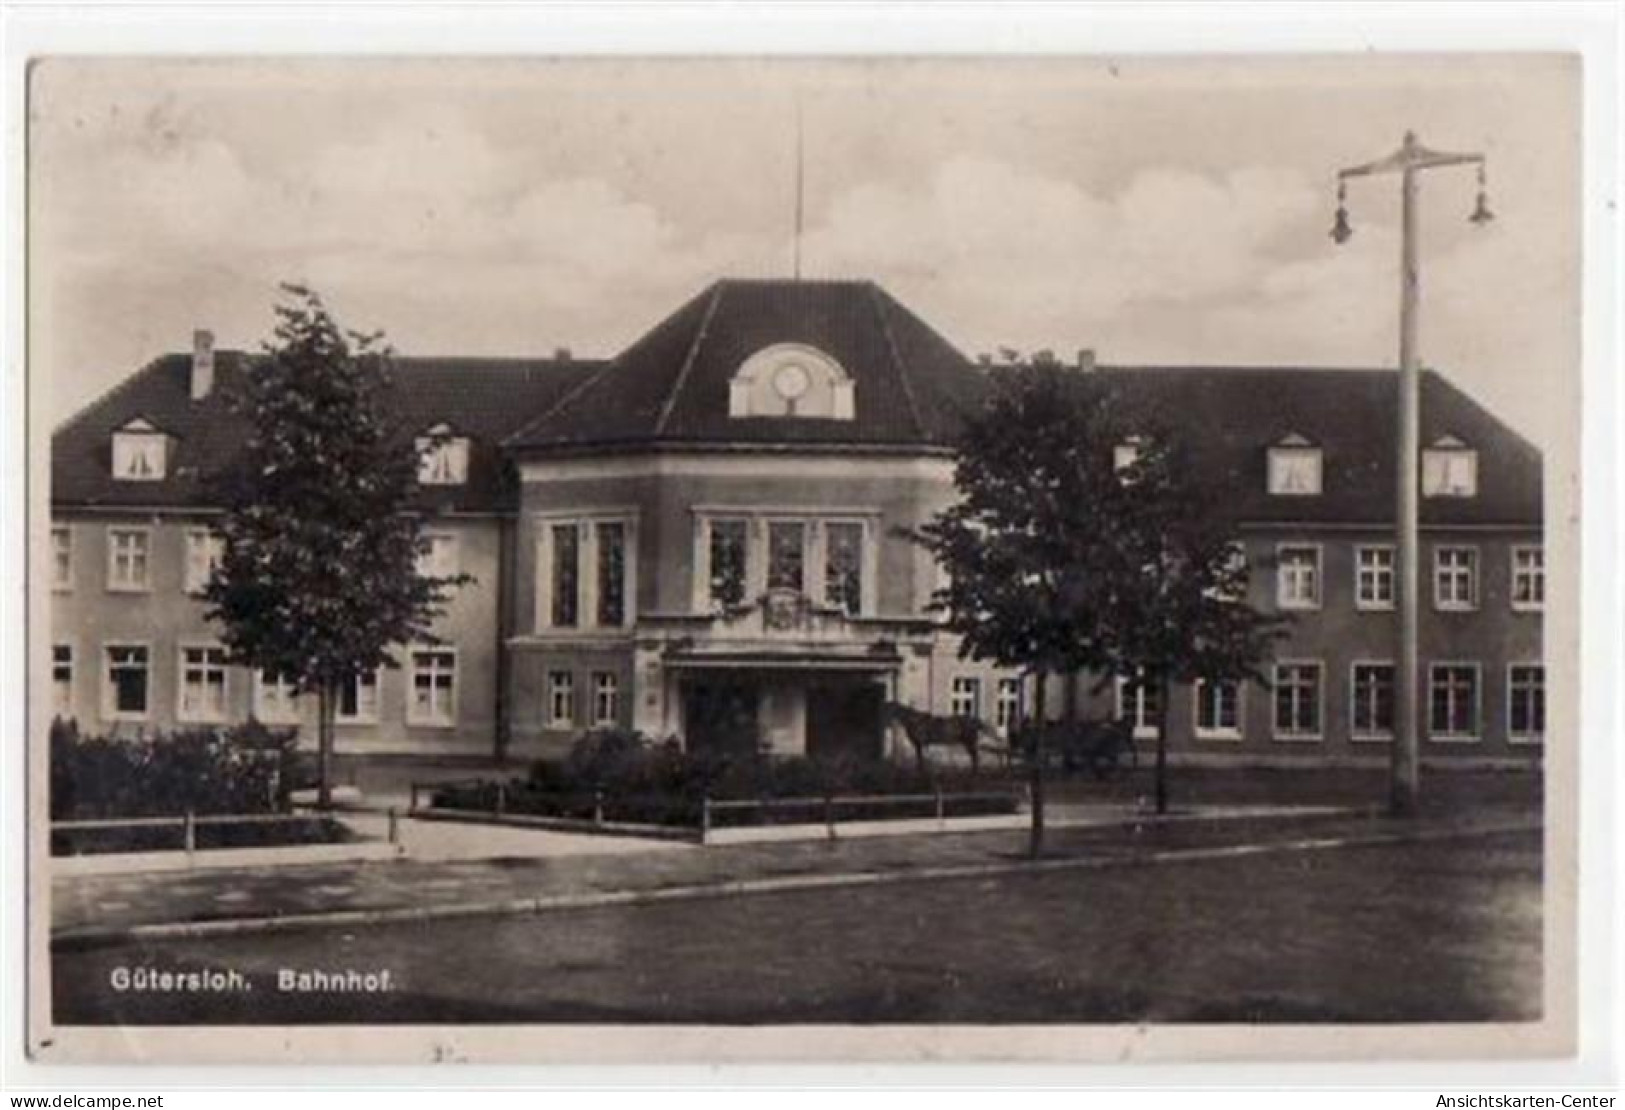 39064906 - Guetersloh Mit Bahnhof Gelaufen, Mit Marke Und Stempel Von 1930. Leicht Buegig, Leicht Fleckig, Sonst Gut Er - Guetersloh